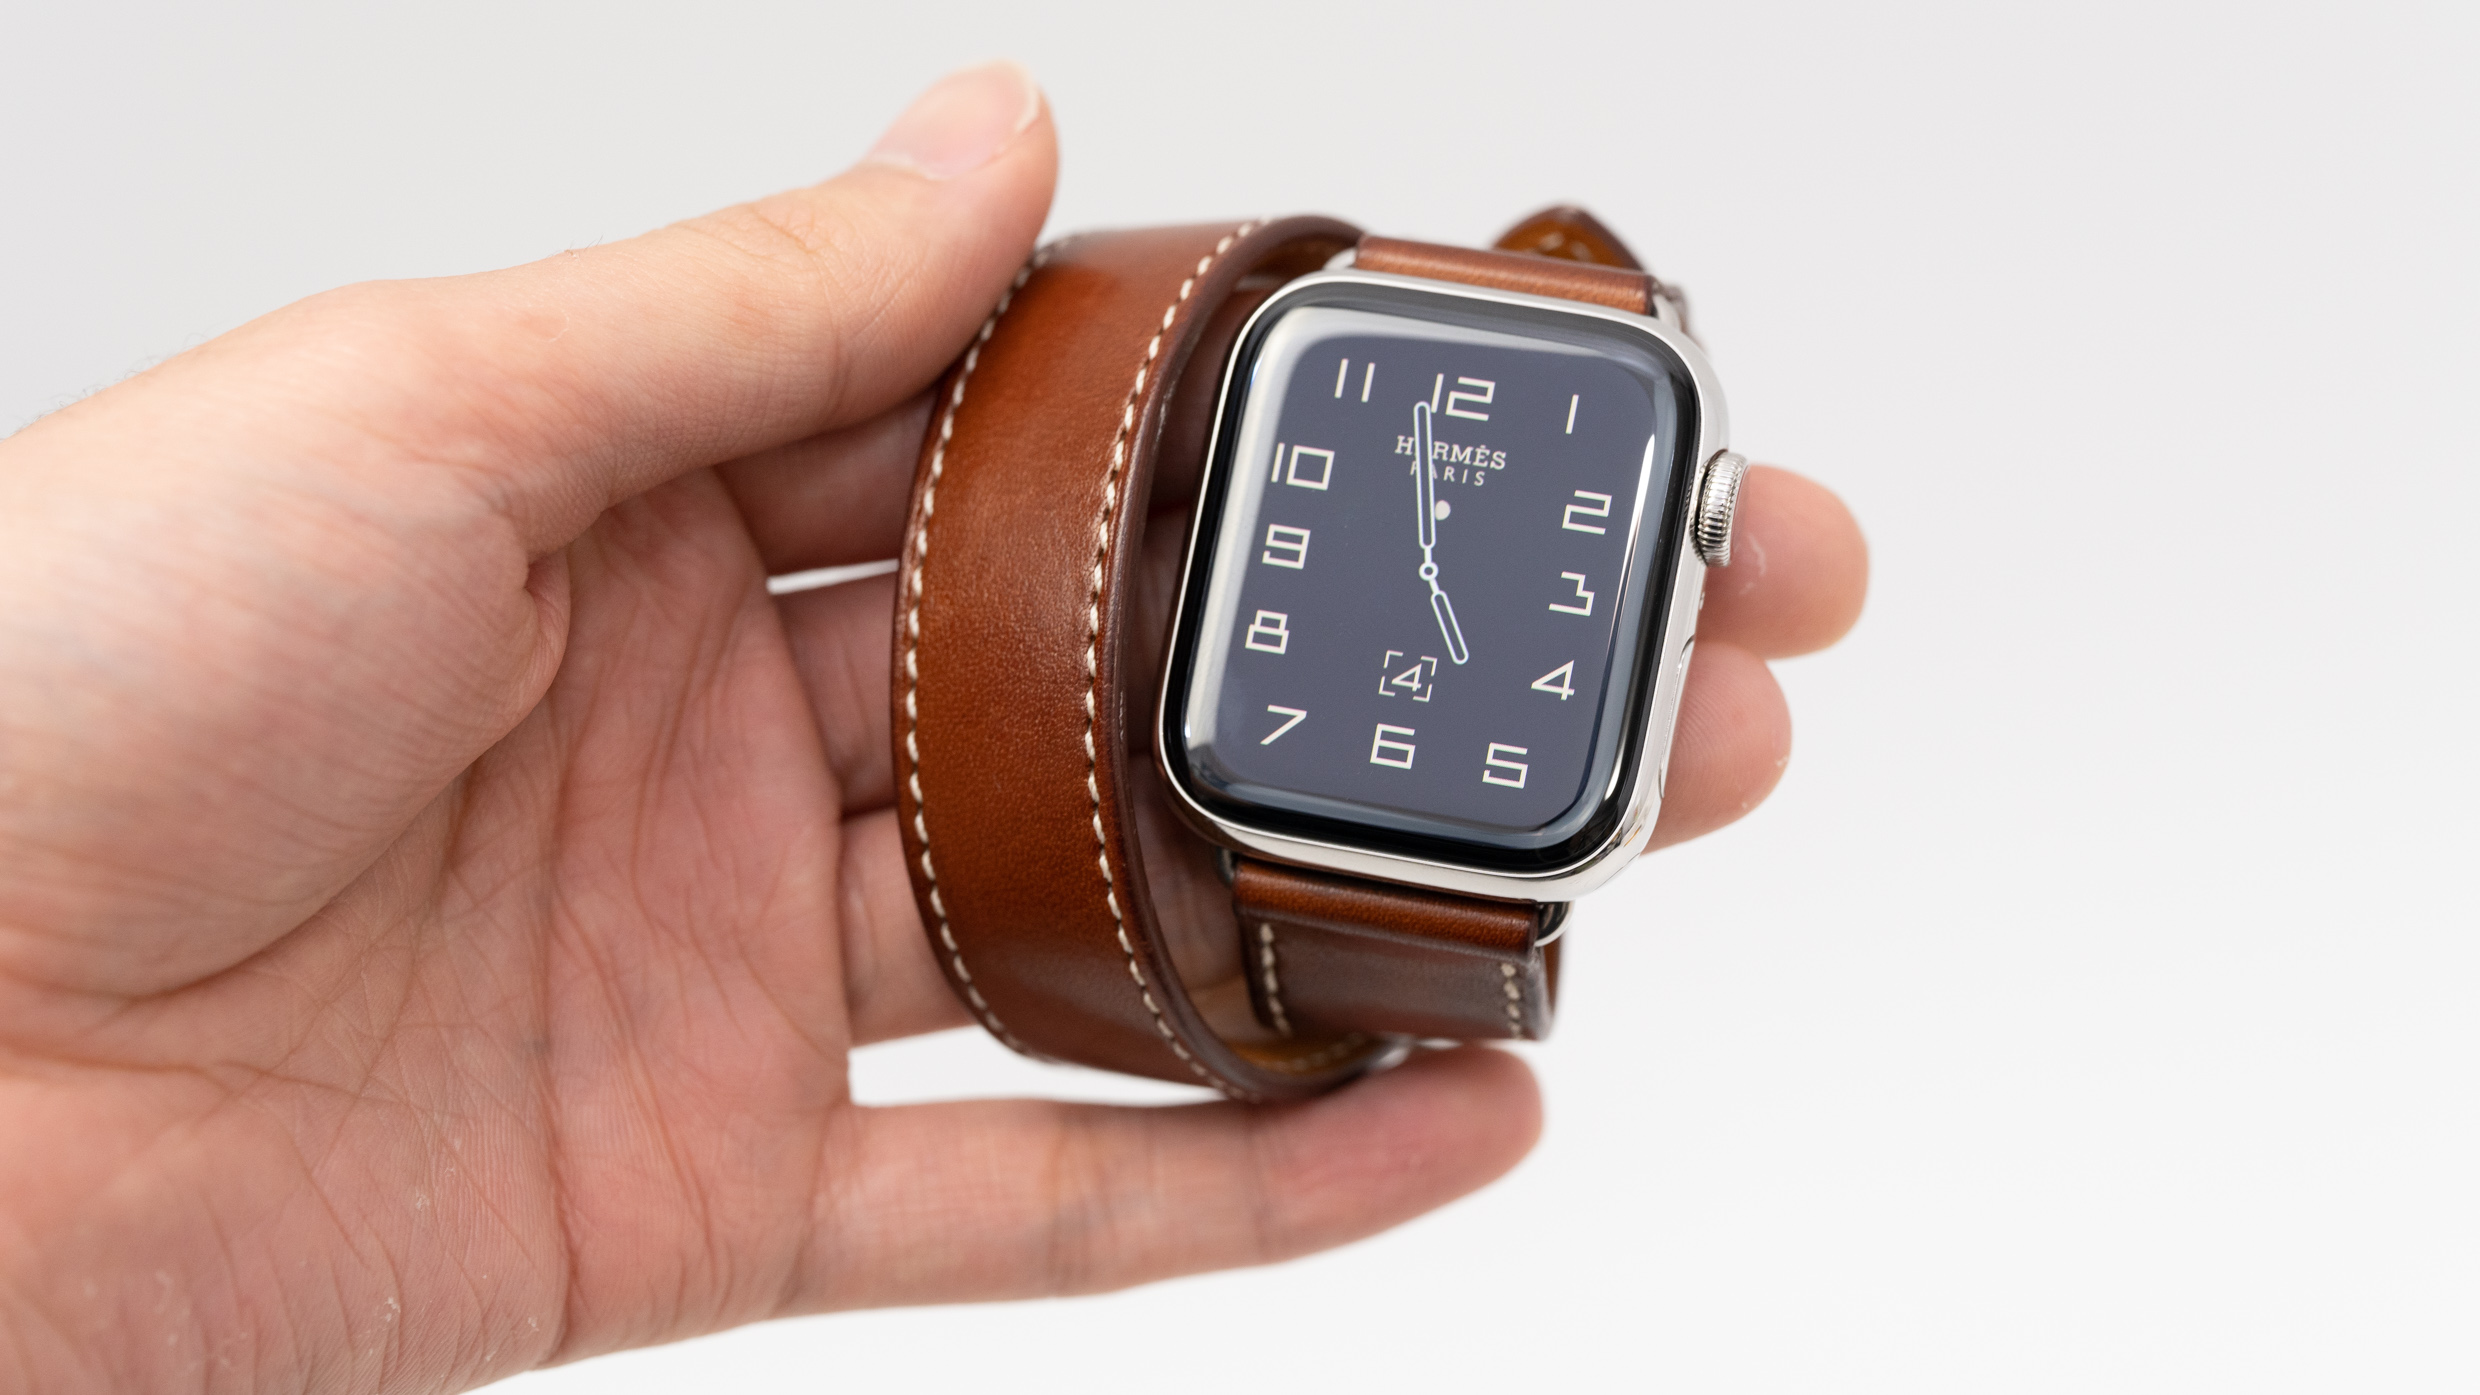 Apple Watch Hermès - ドゥブルトゥールレザーストラップ 黒 レビュー 